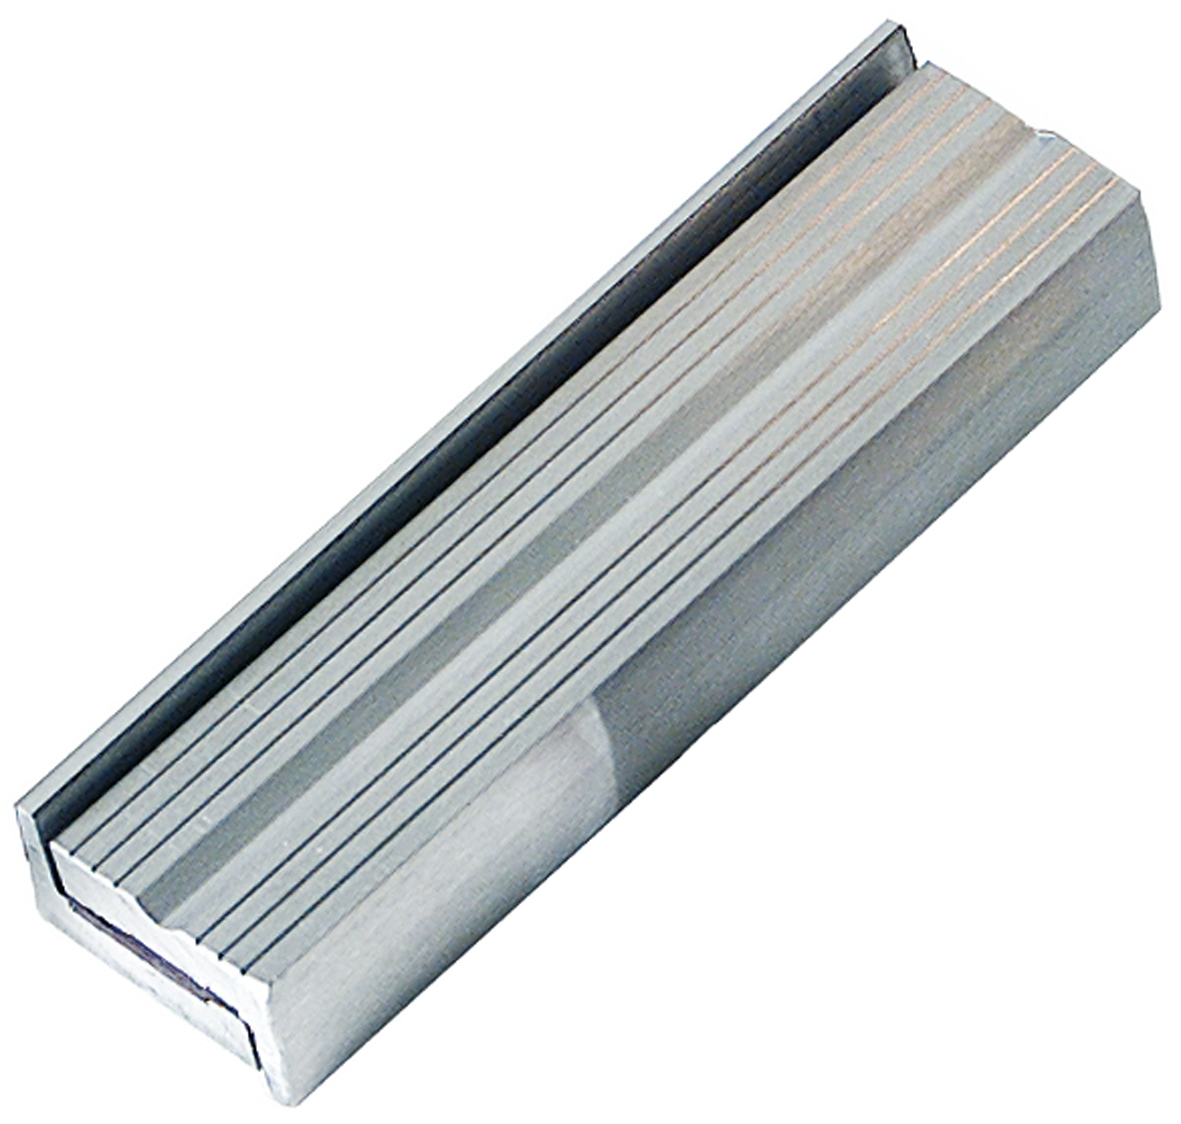 Mors magnétiques 160 mm en aluminium X 2 Mob